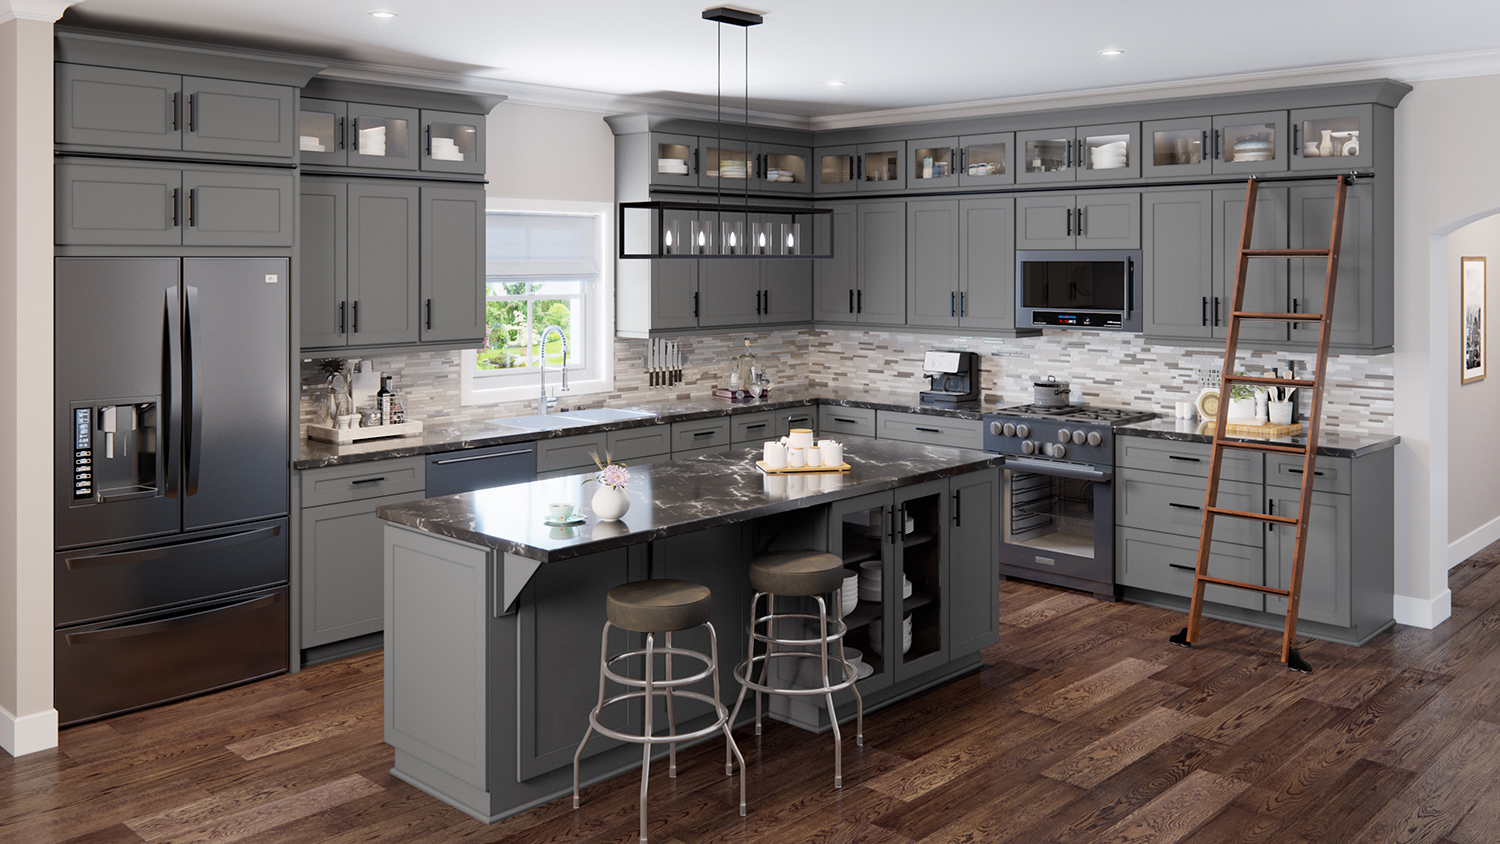 61 Kitchen Cabinet Design Ideas 2022 - Unique Kitchen Cabinet Styles